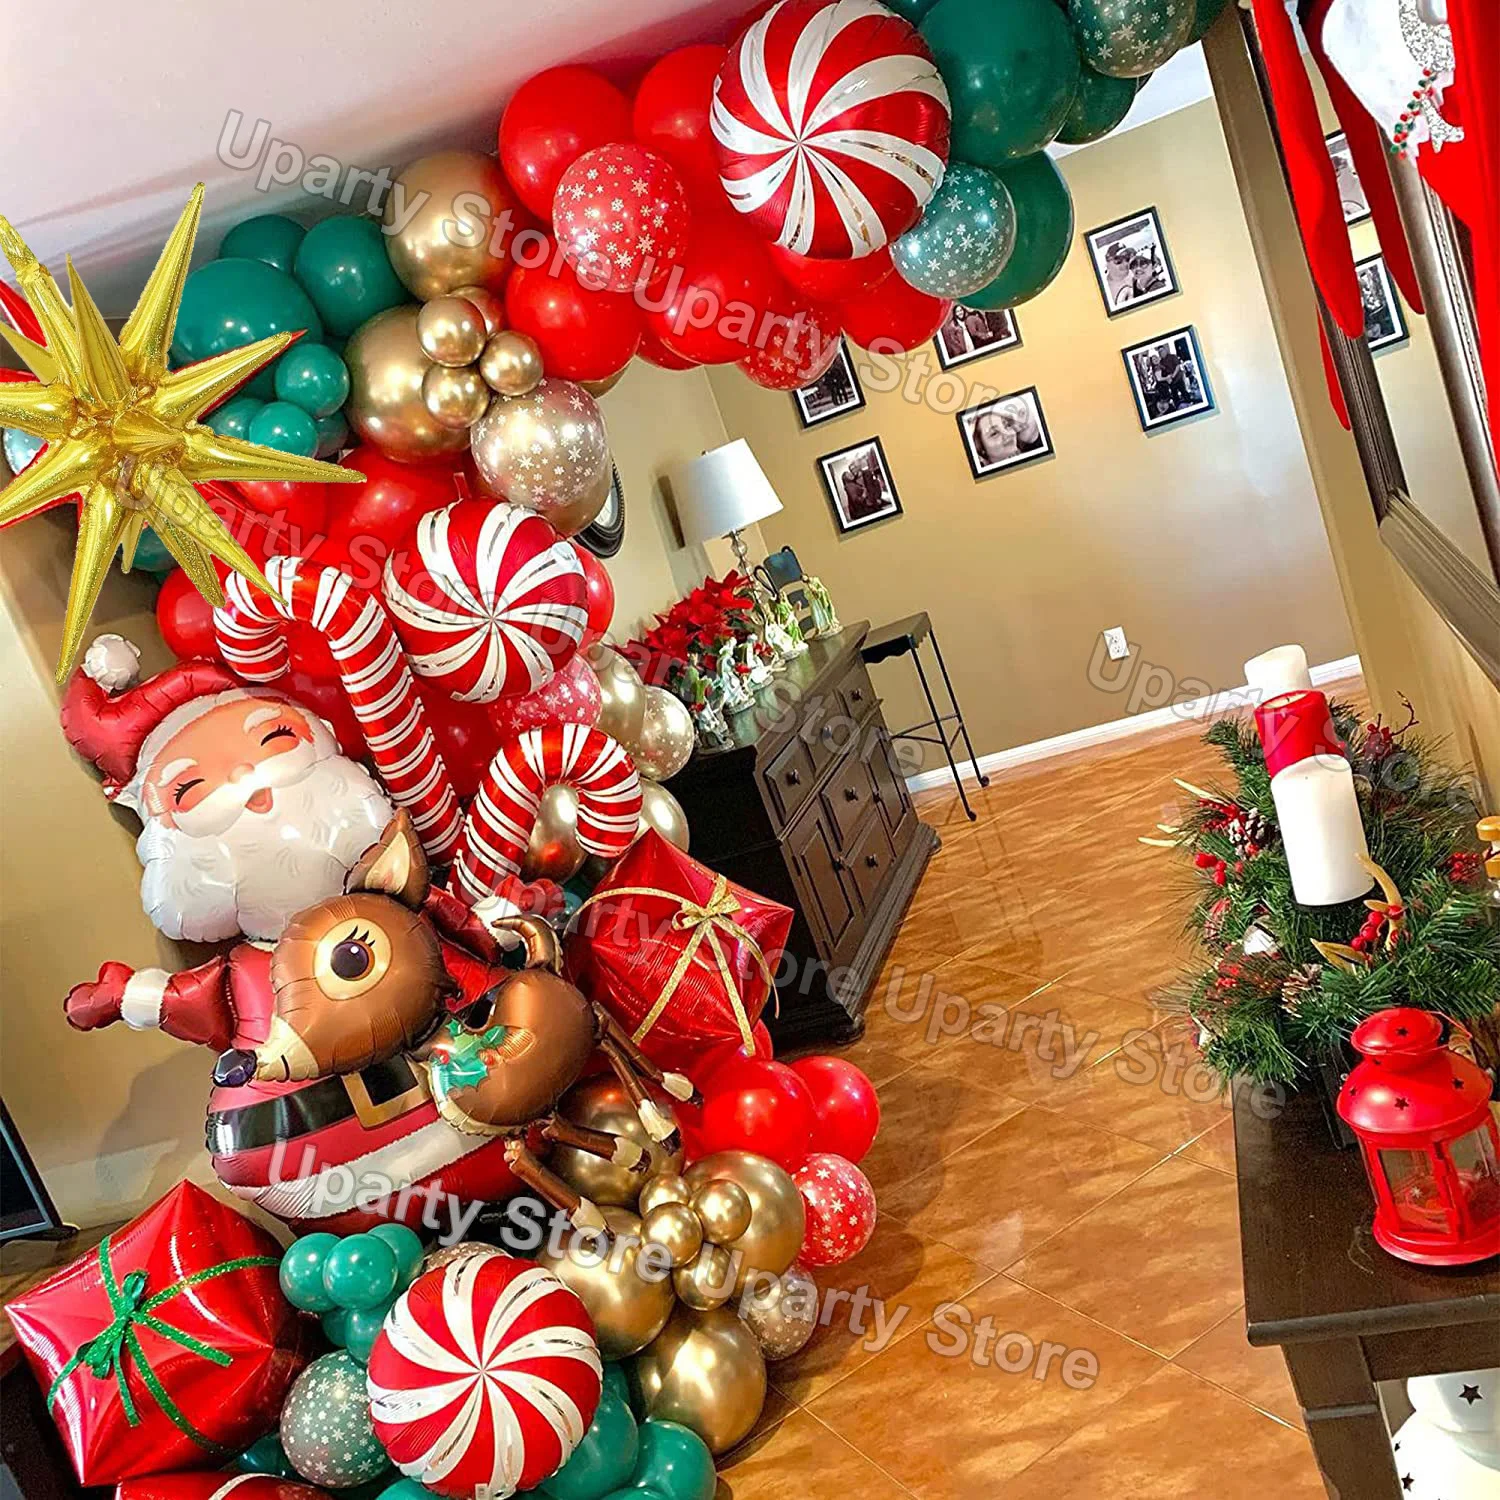 Tanio 1 zestaw świąteczne balony Arch zestaw święty mikołaj jeleń sklep